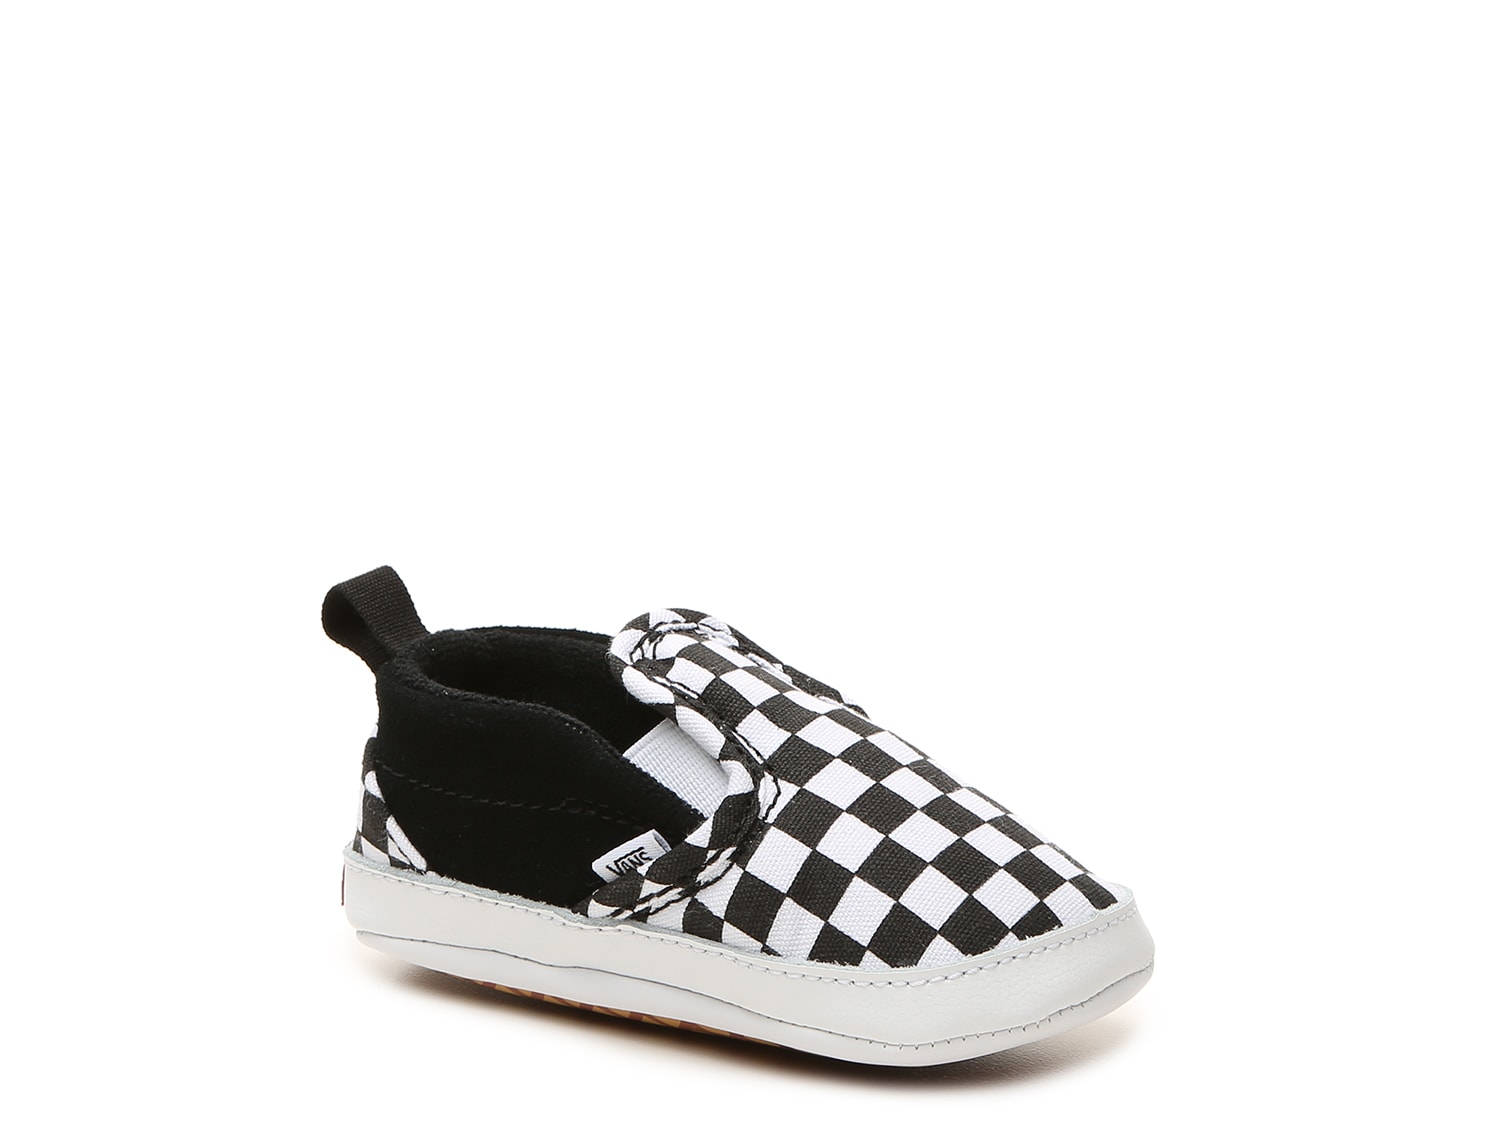 Vans Checkered Slip-On Infant Crib Shoe - Free Shipping | DSW